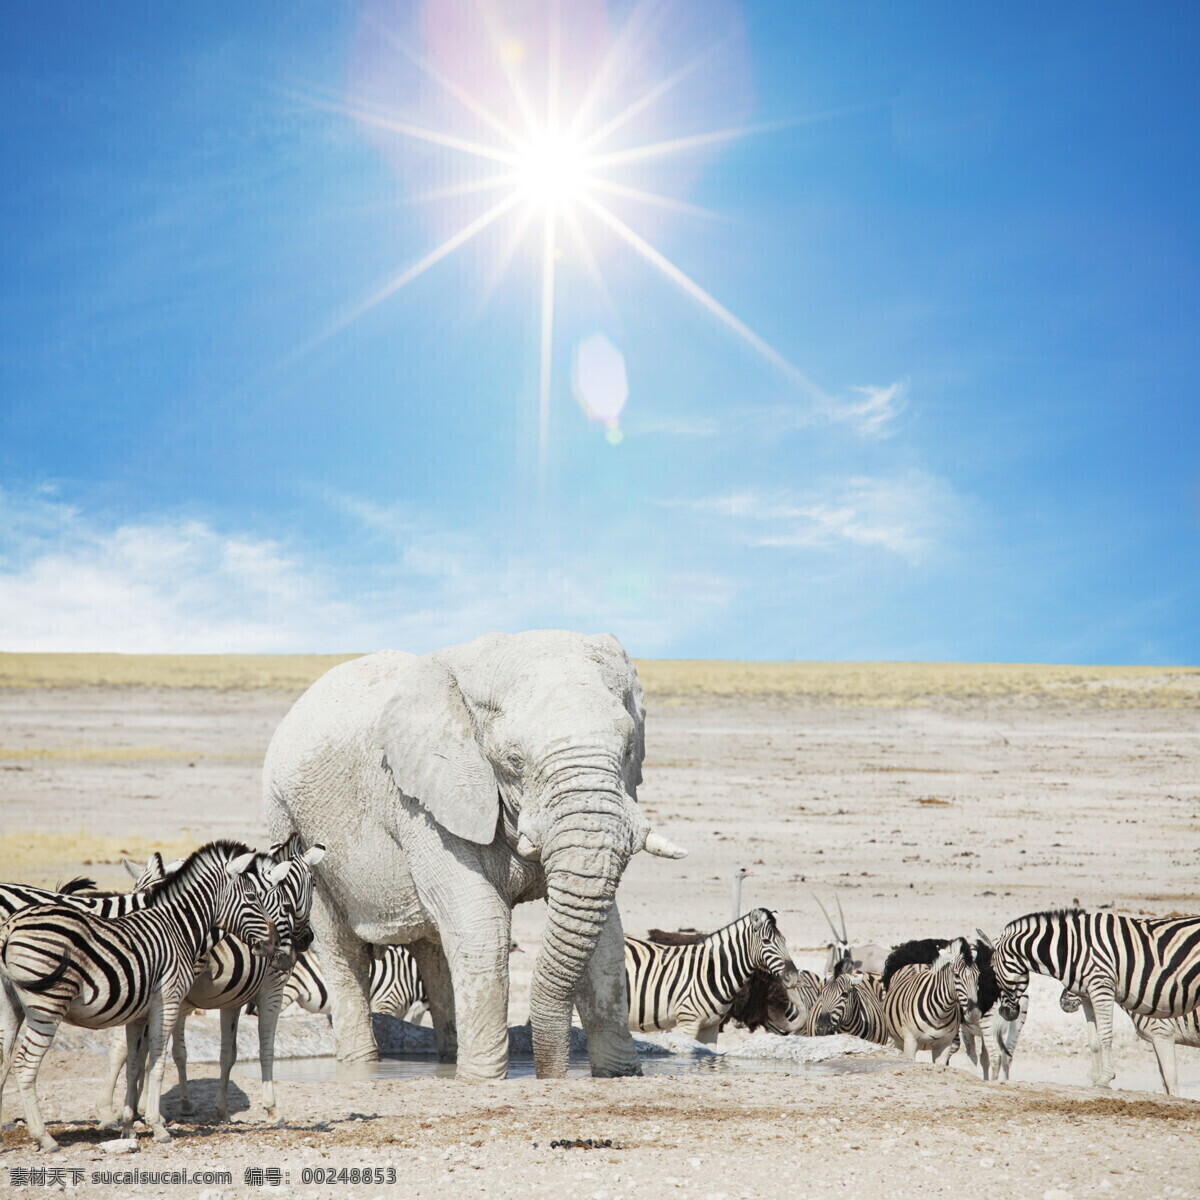 和谐共存 大象 斑马 平原 蓝天 太阳 灰色